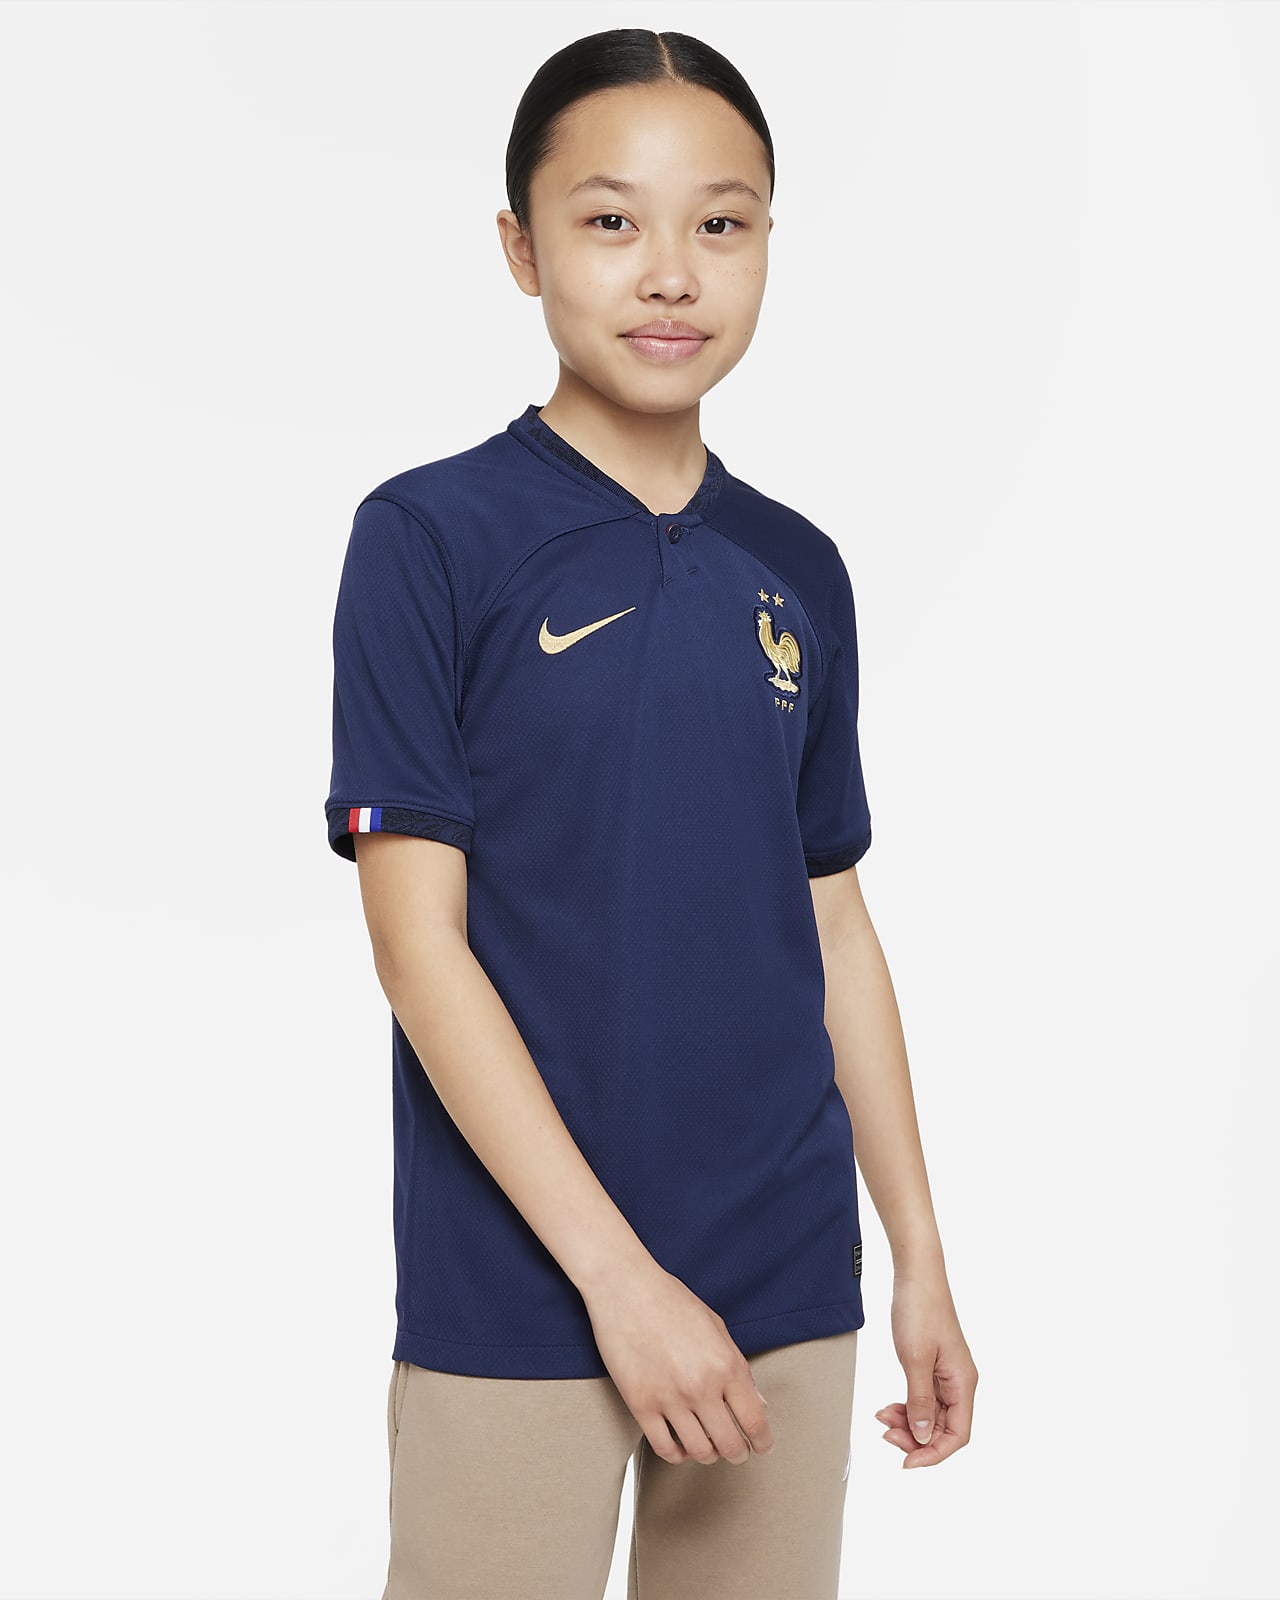 FFF 2022/23 Stadium Home Nike Dri-FIT-fodboldtrøje til større børn